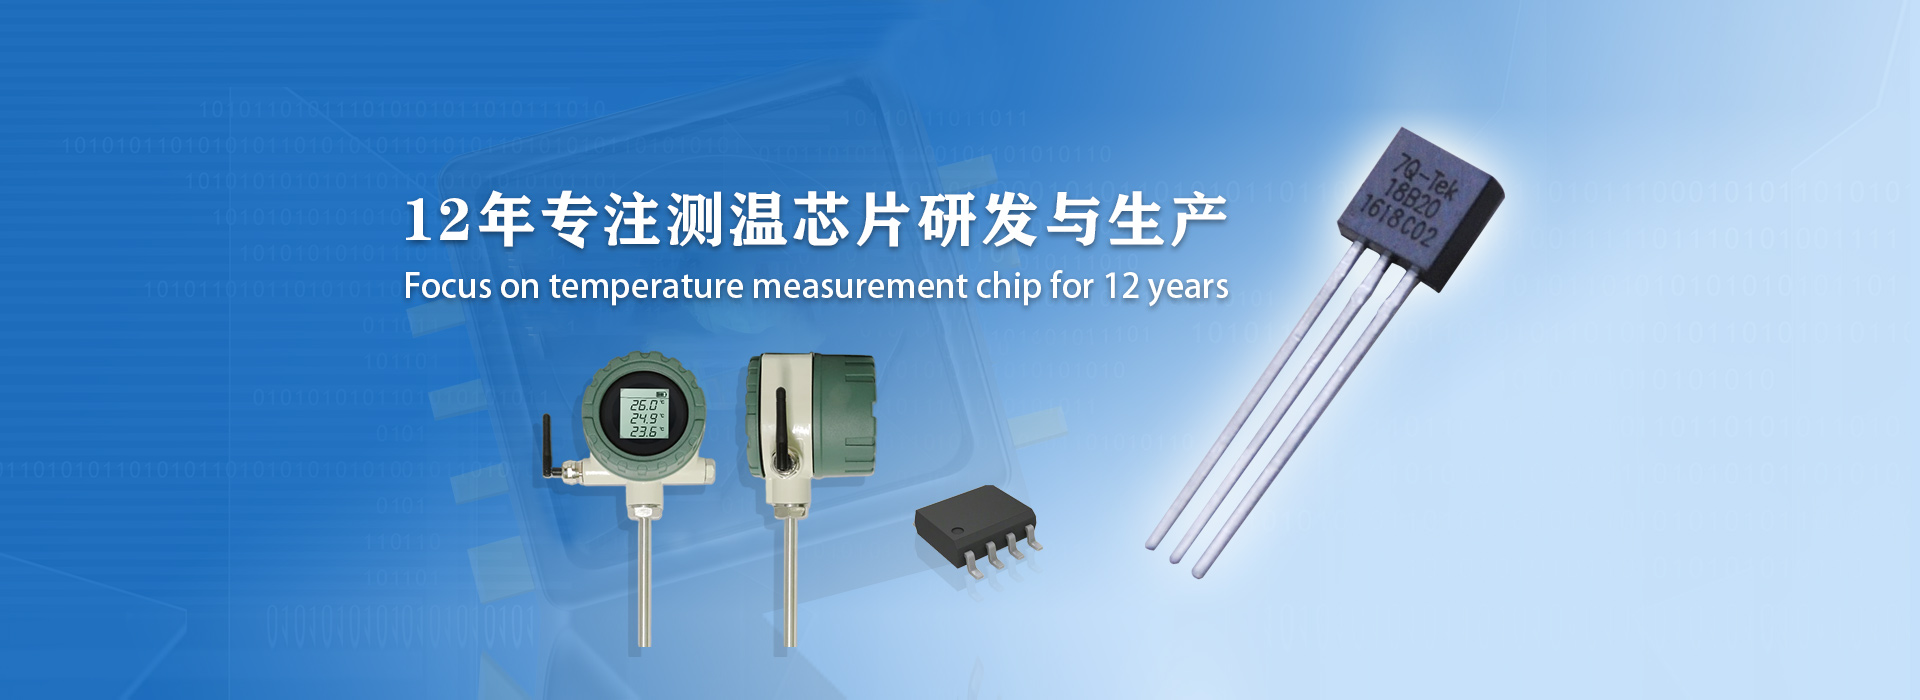 北京七芯12年专注测温芯片研发与生产